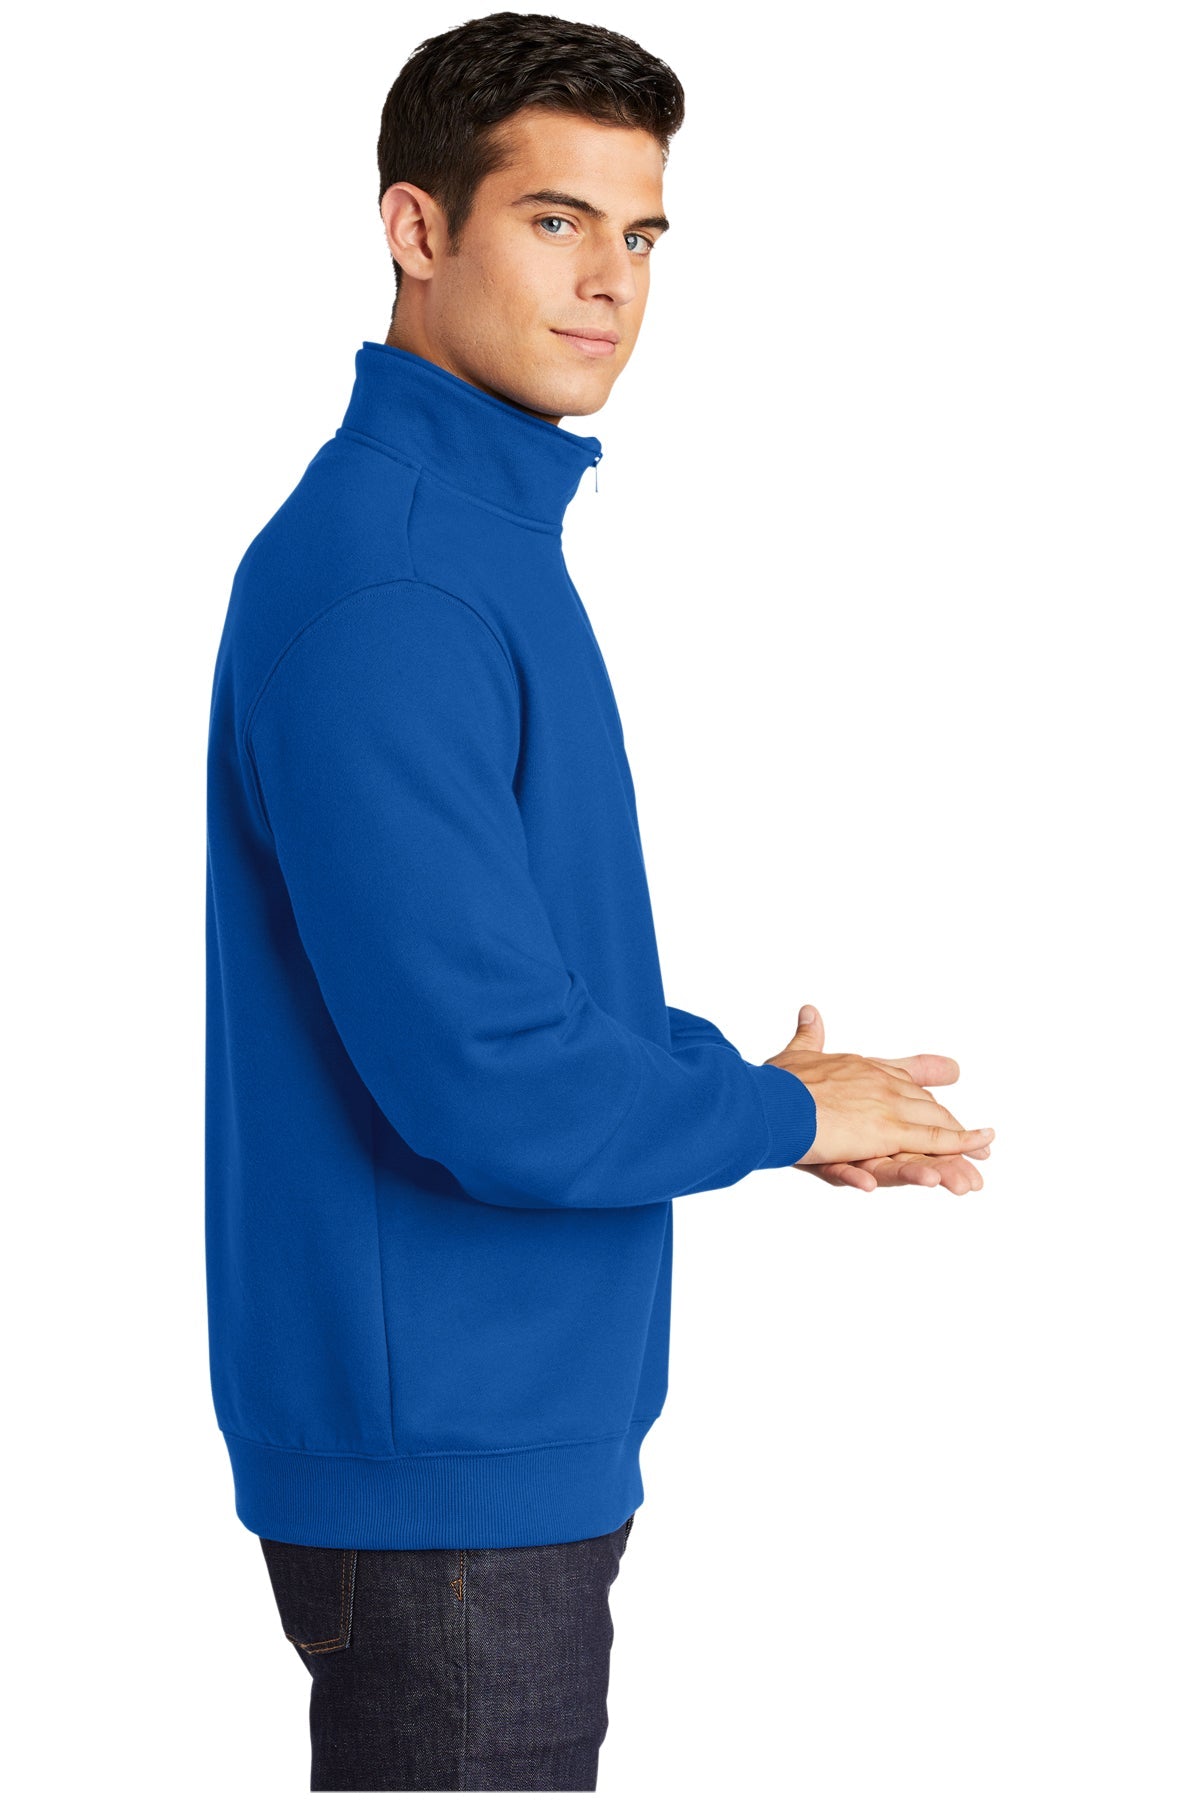 Sport-Tek Tall Custom 1/4-Zip Sweatshirts, True Royal